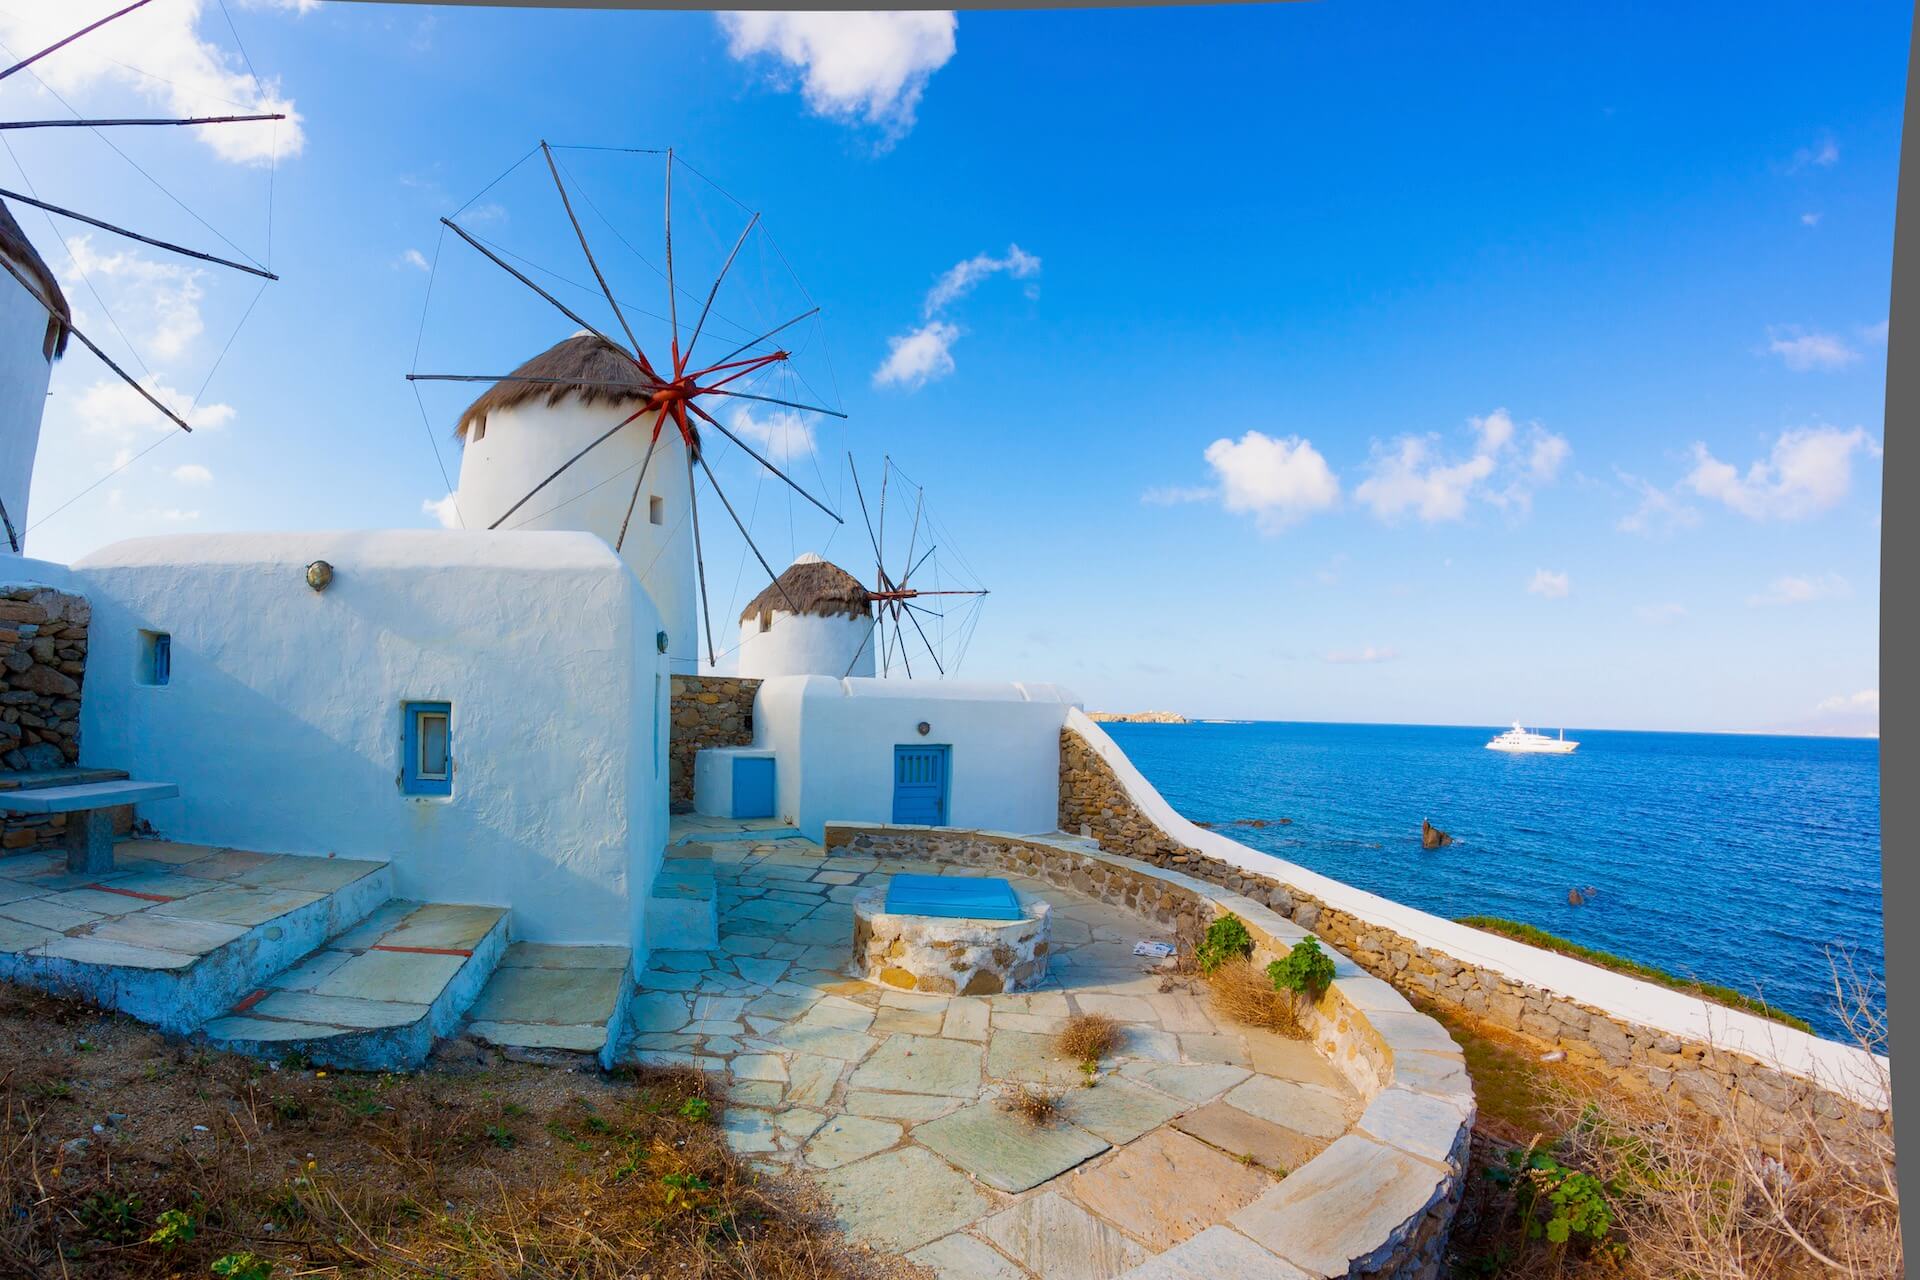 Windmills on the coast of the Aegean Sea